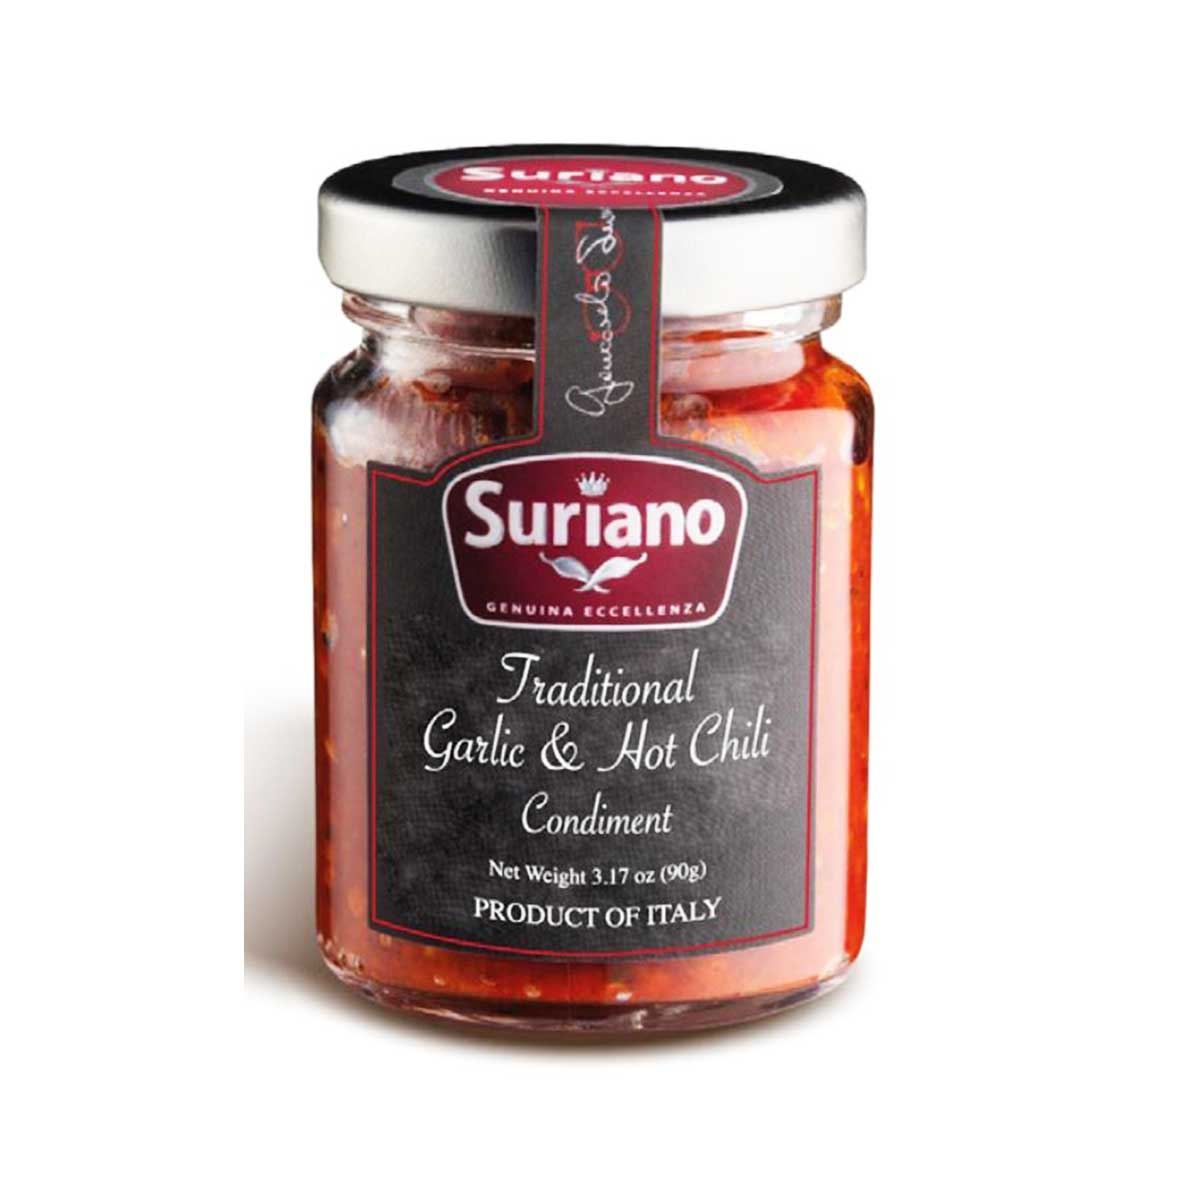 Fiery Hot Chili Spice Blend | Whole Spice 2.6 oz Jar